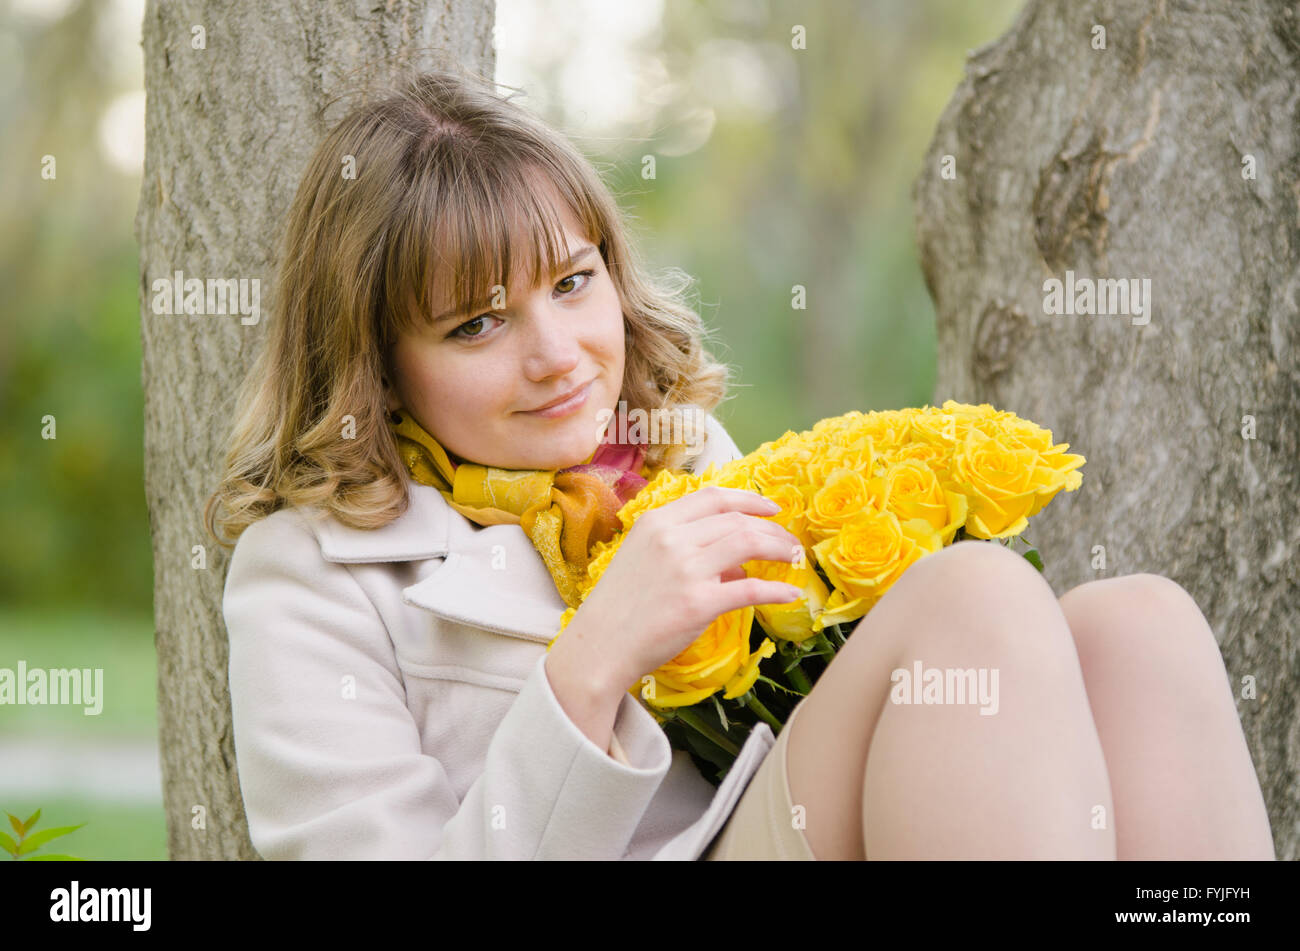 Triste fille avec des roses jaunes, assis dans un arbre Banque D'Images